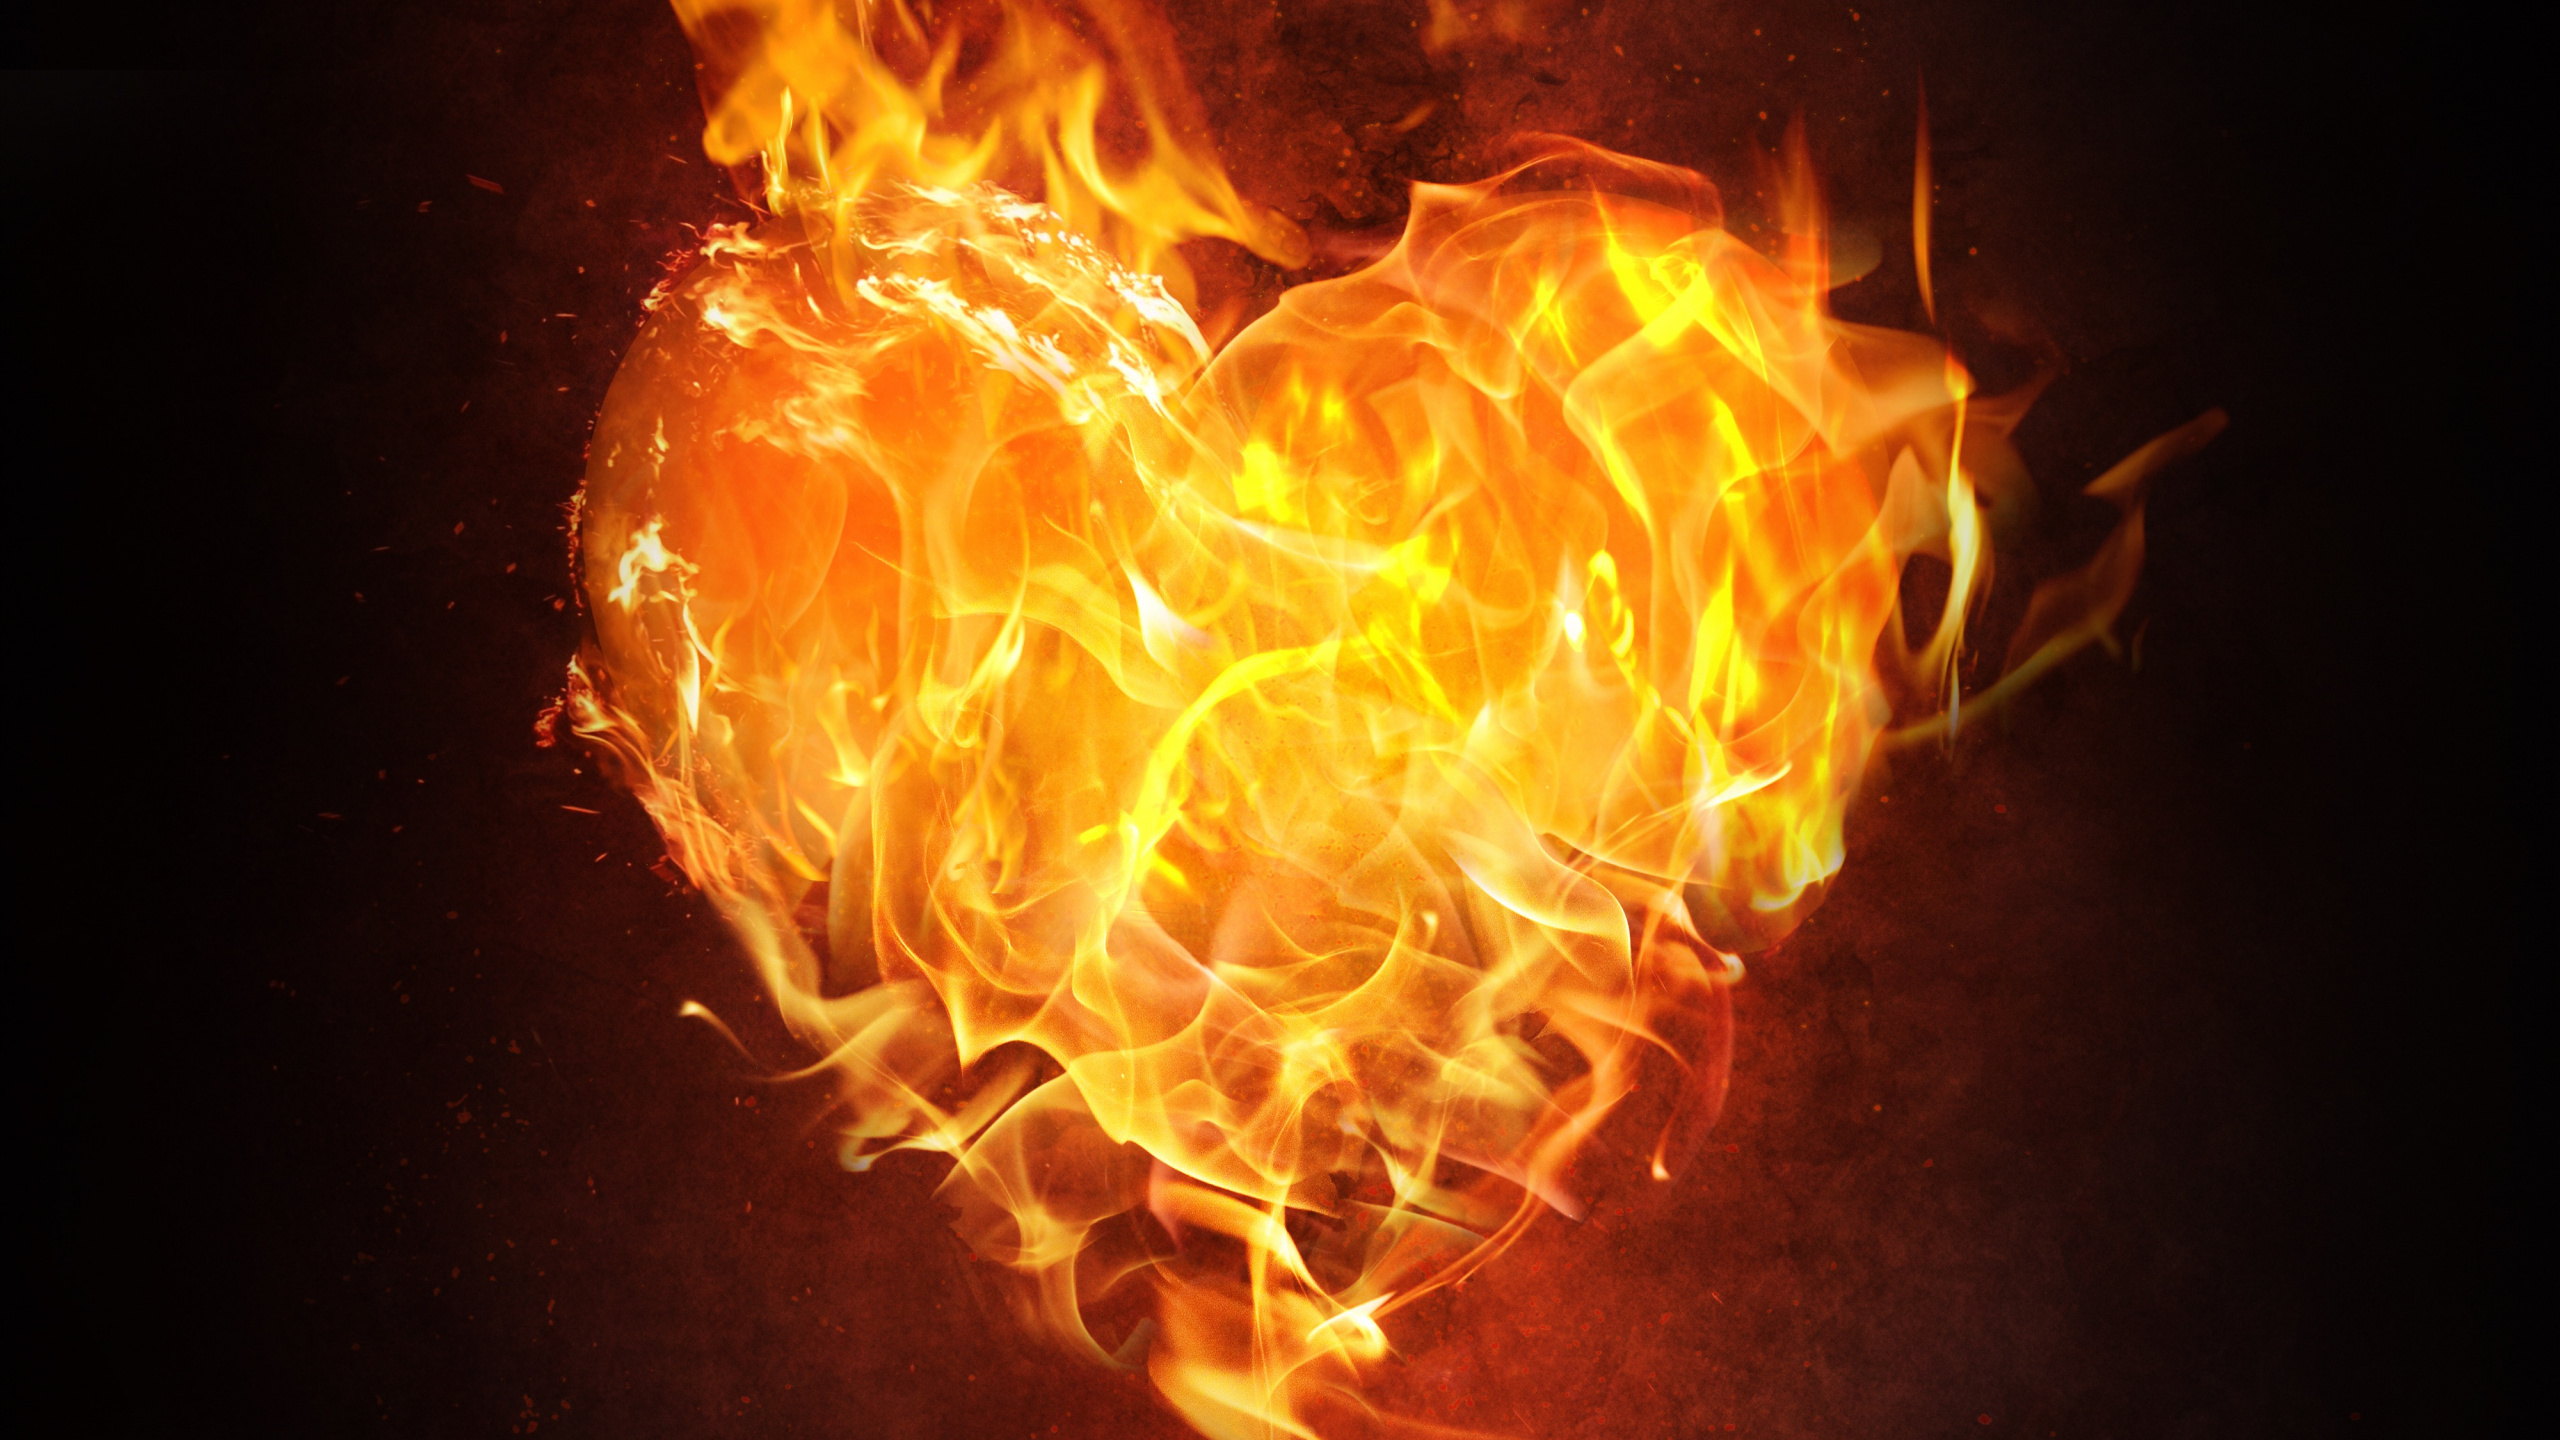 Flame, Fire, Heart, Heat, Orange. Wallpaper in 2560x1440 Resolution